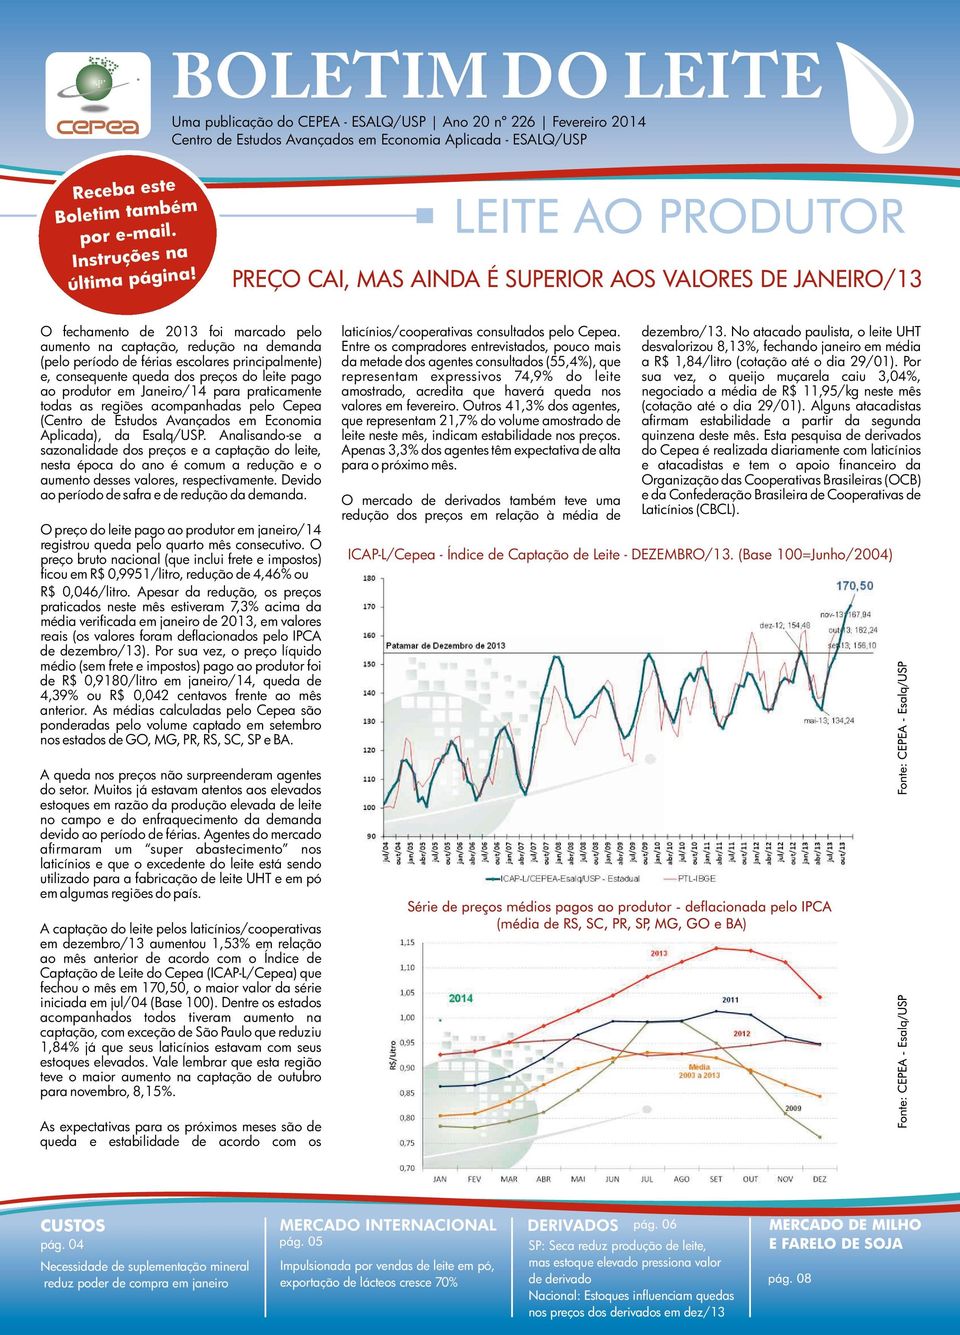 consequente queda dos preços do leite pago ao produtor em Janeiro/14 para praticamente todas as regiões acompanhadas pelo Cepea (Centro de Estudos Avançados em Economia Aplicada), da Esalq/USP.